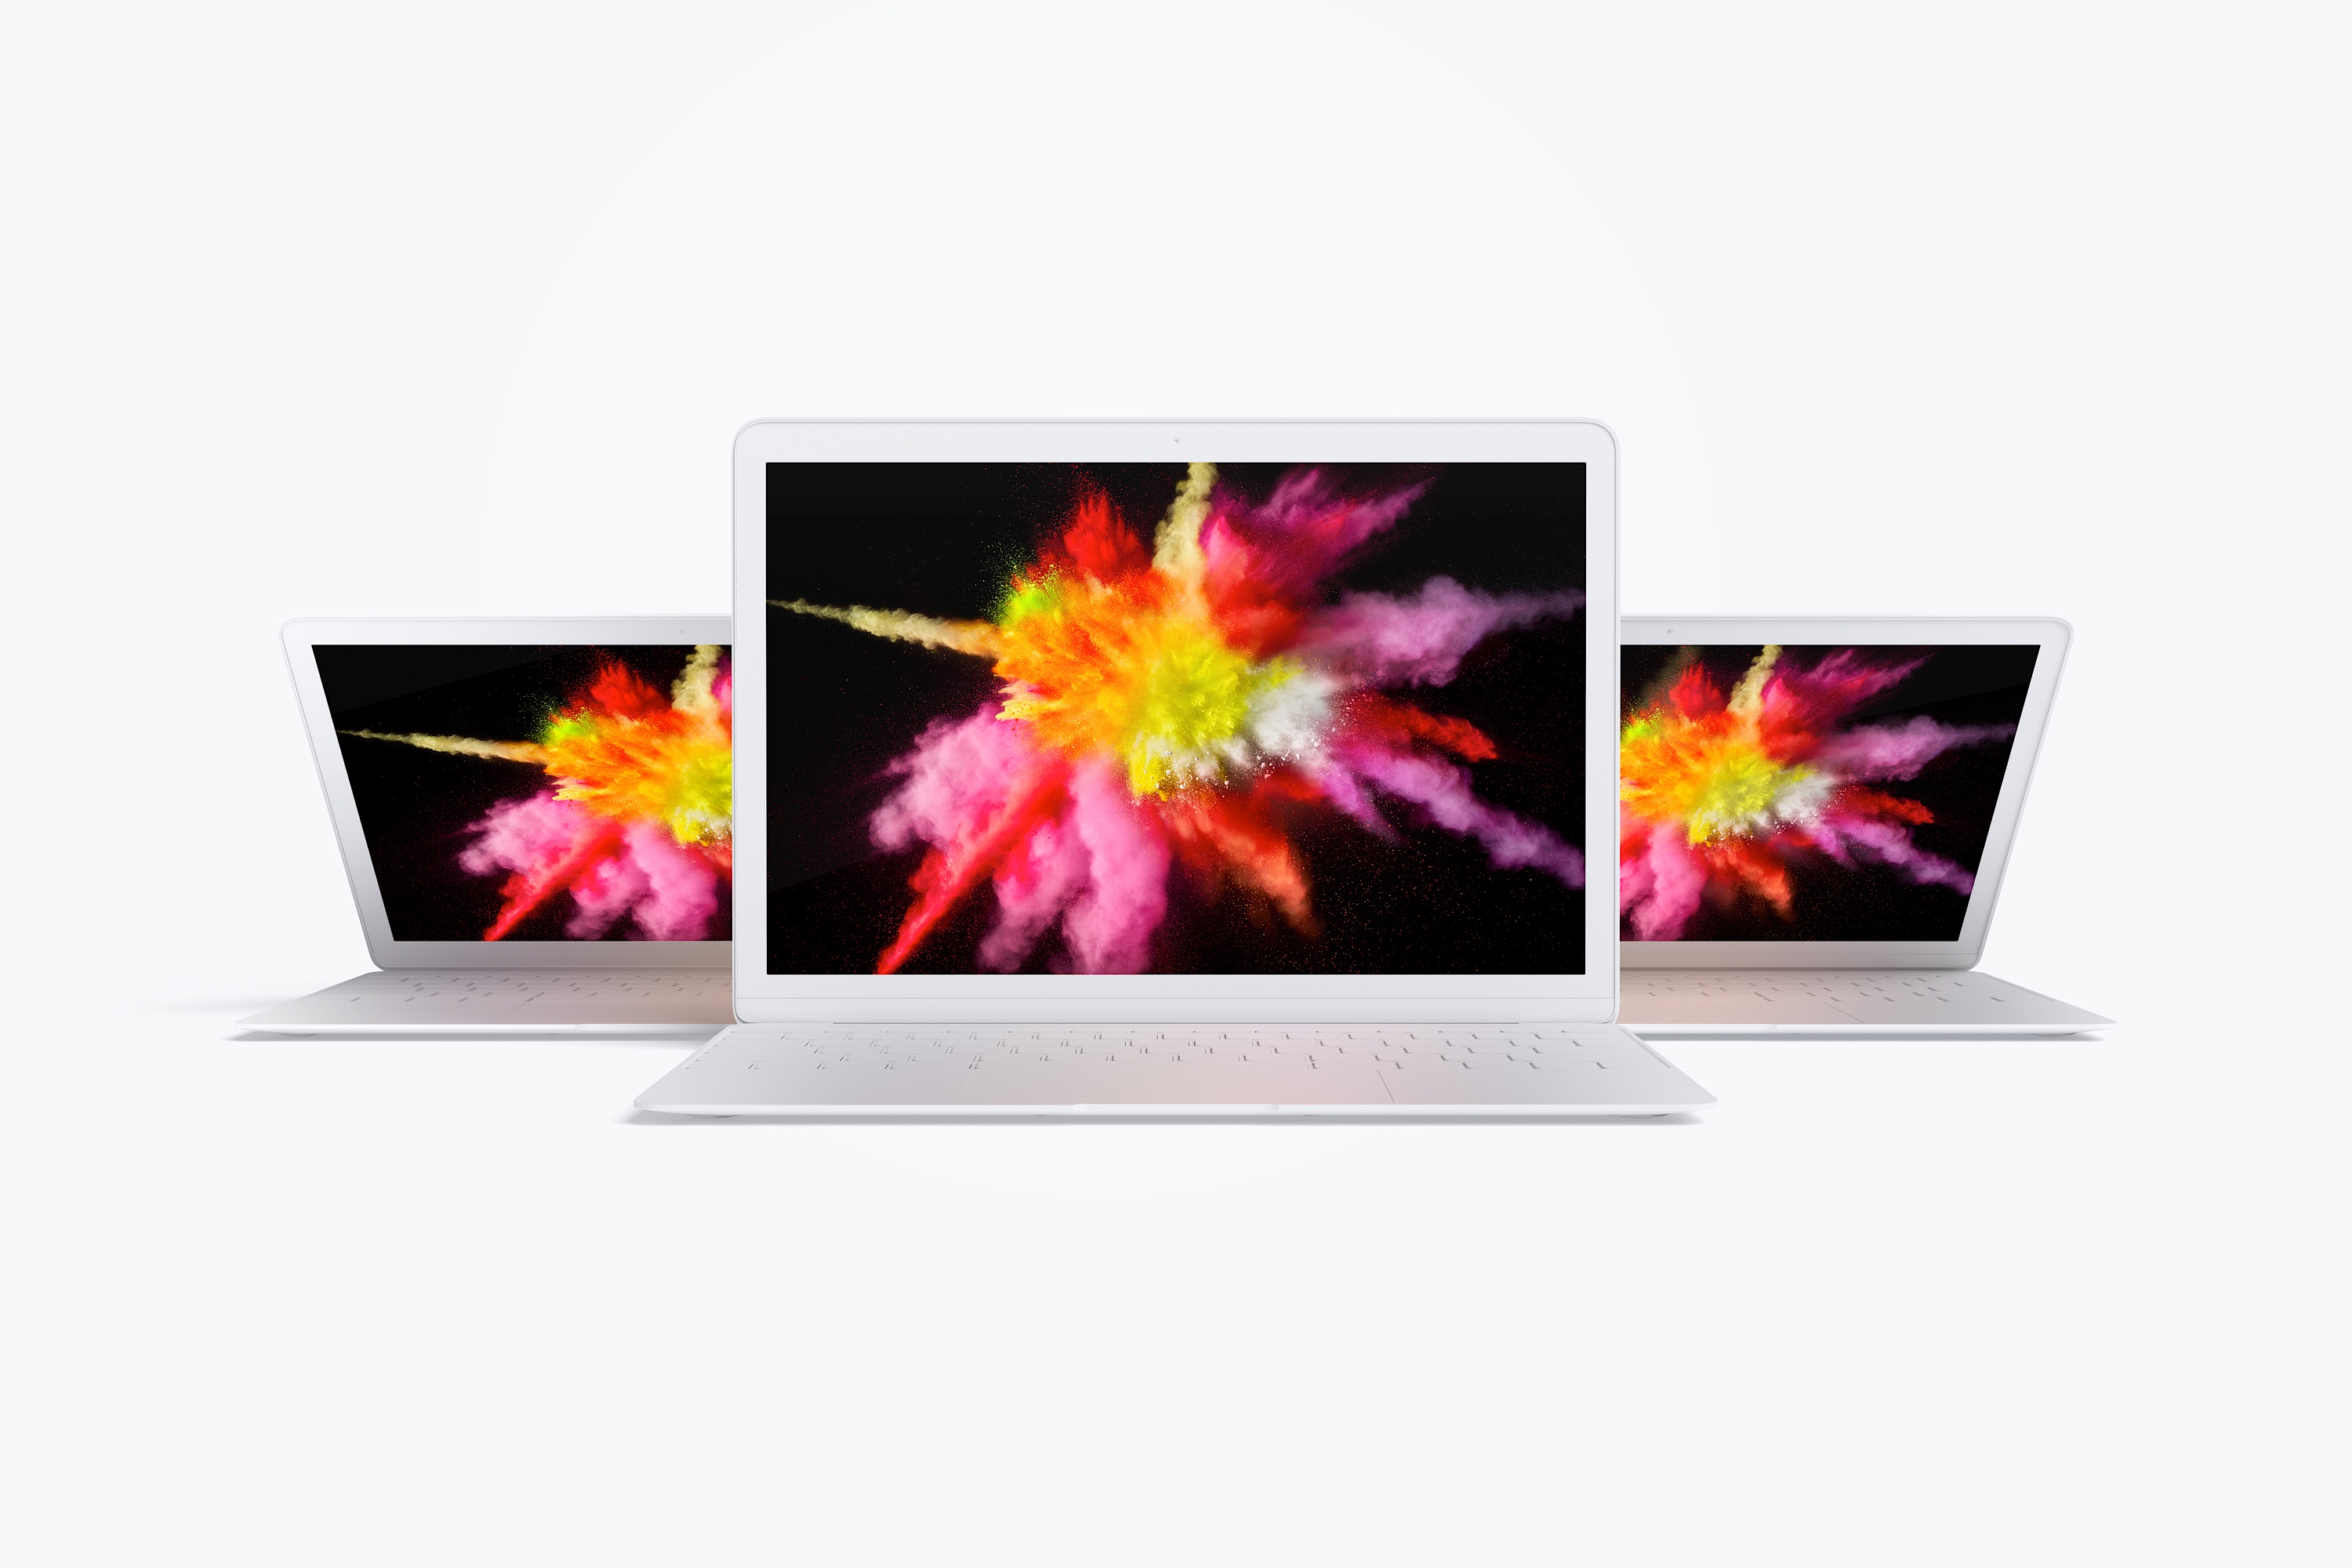 MacBook笔记本电脑多屏幕预览前视图样机03 Clay MacBook Mockup, Front View 03插图(2)